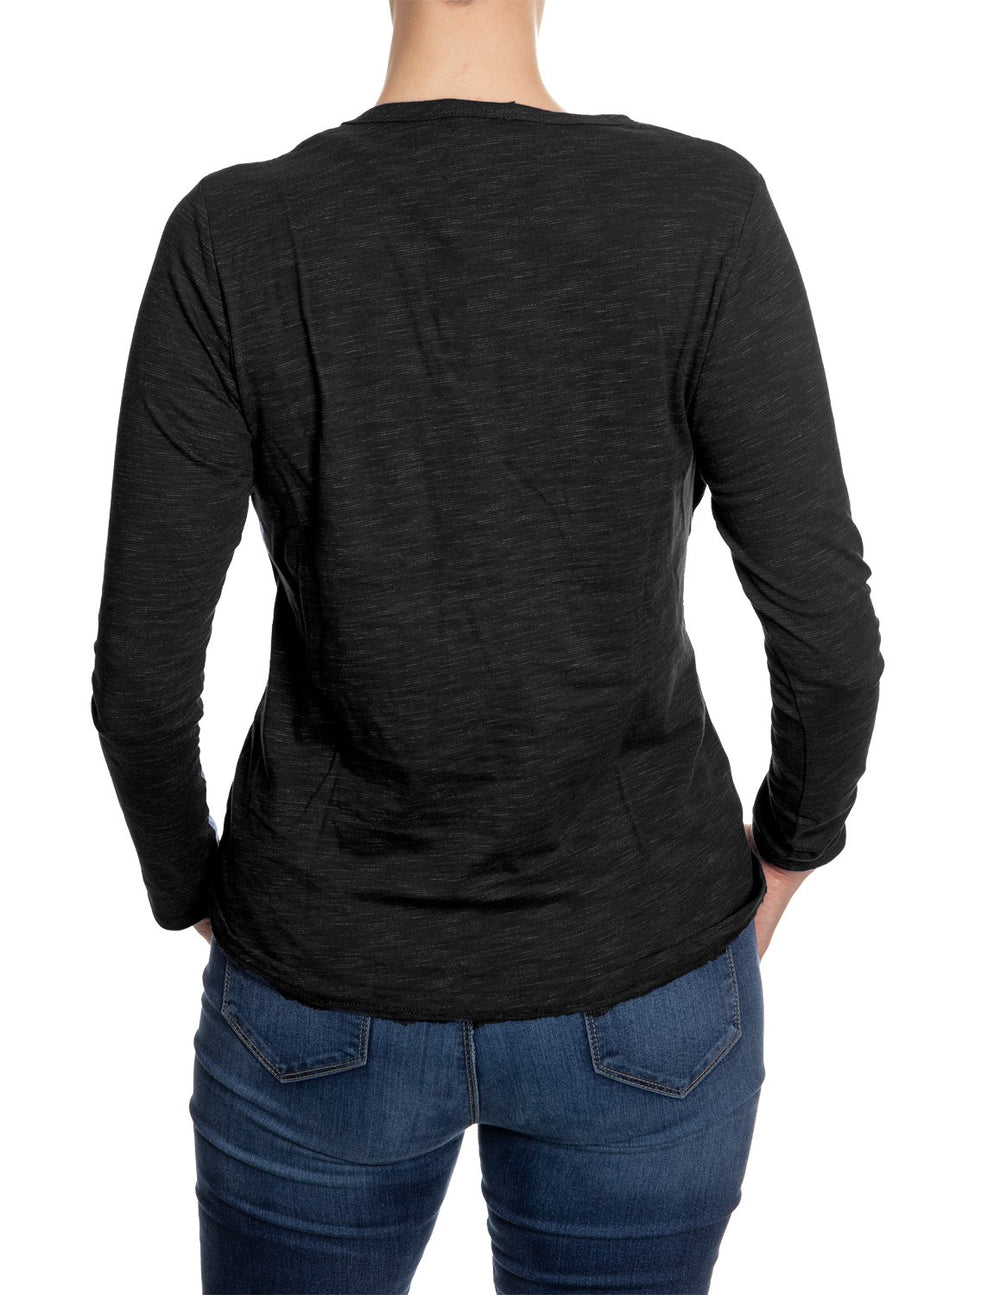 Colorado Avalanche Heart Logo Long Sleeve Shirt for Women